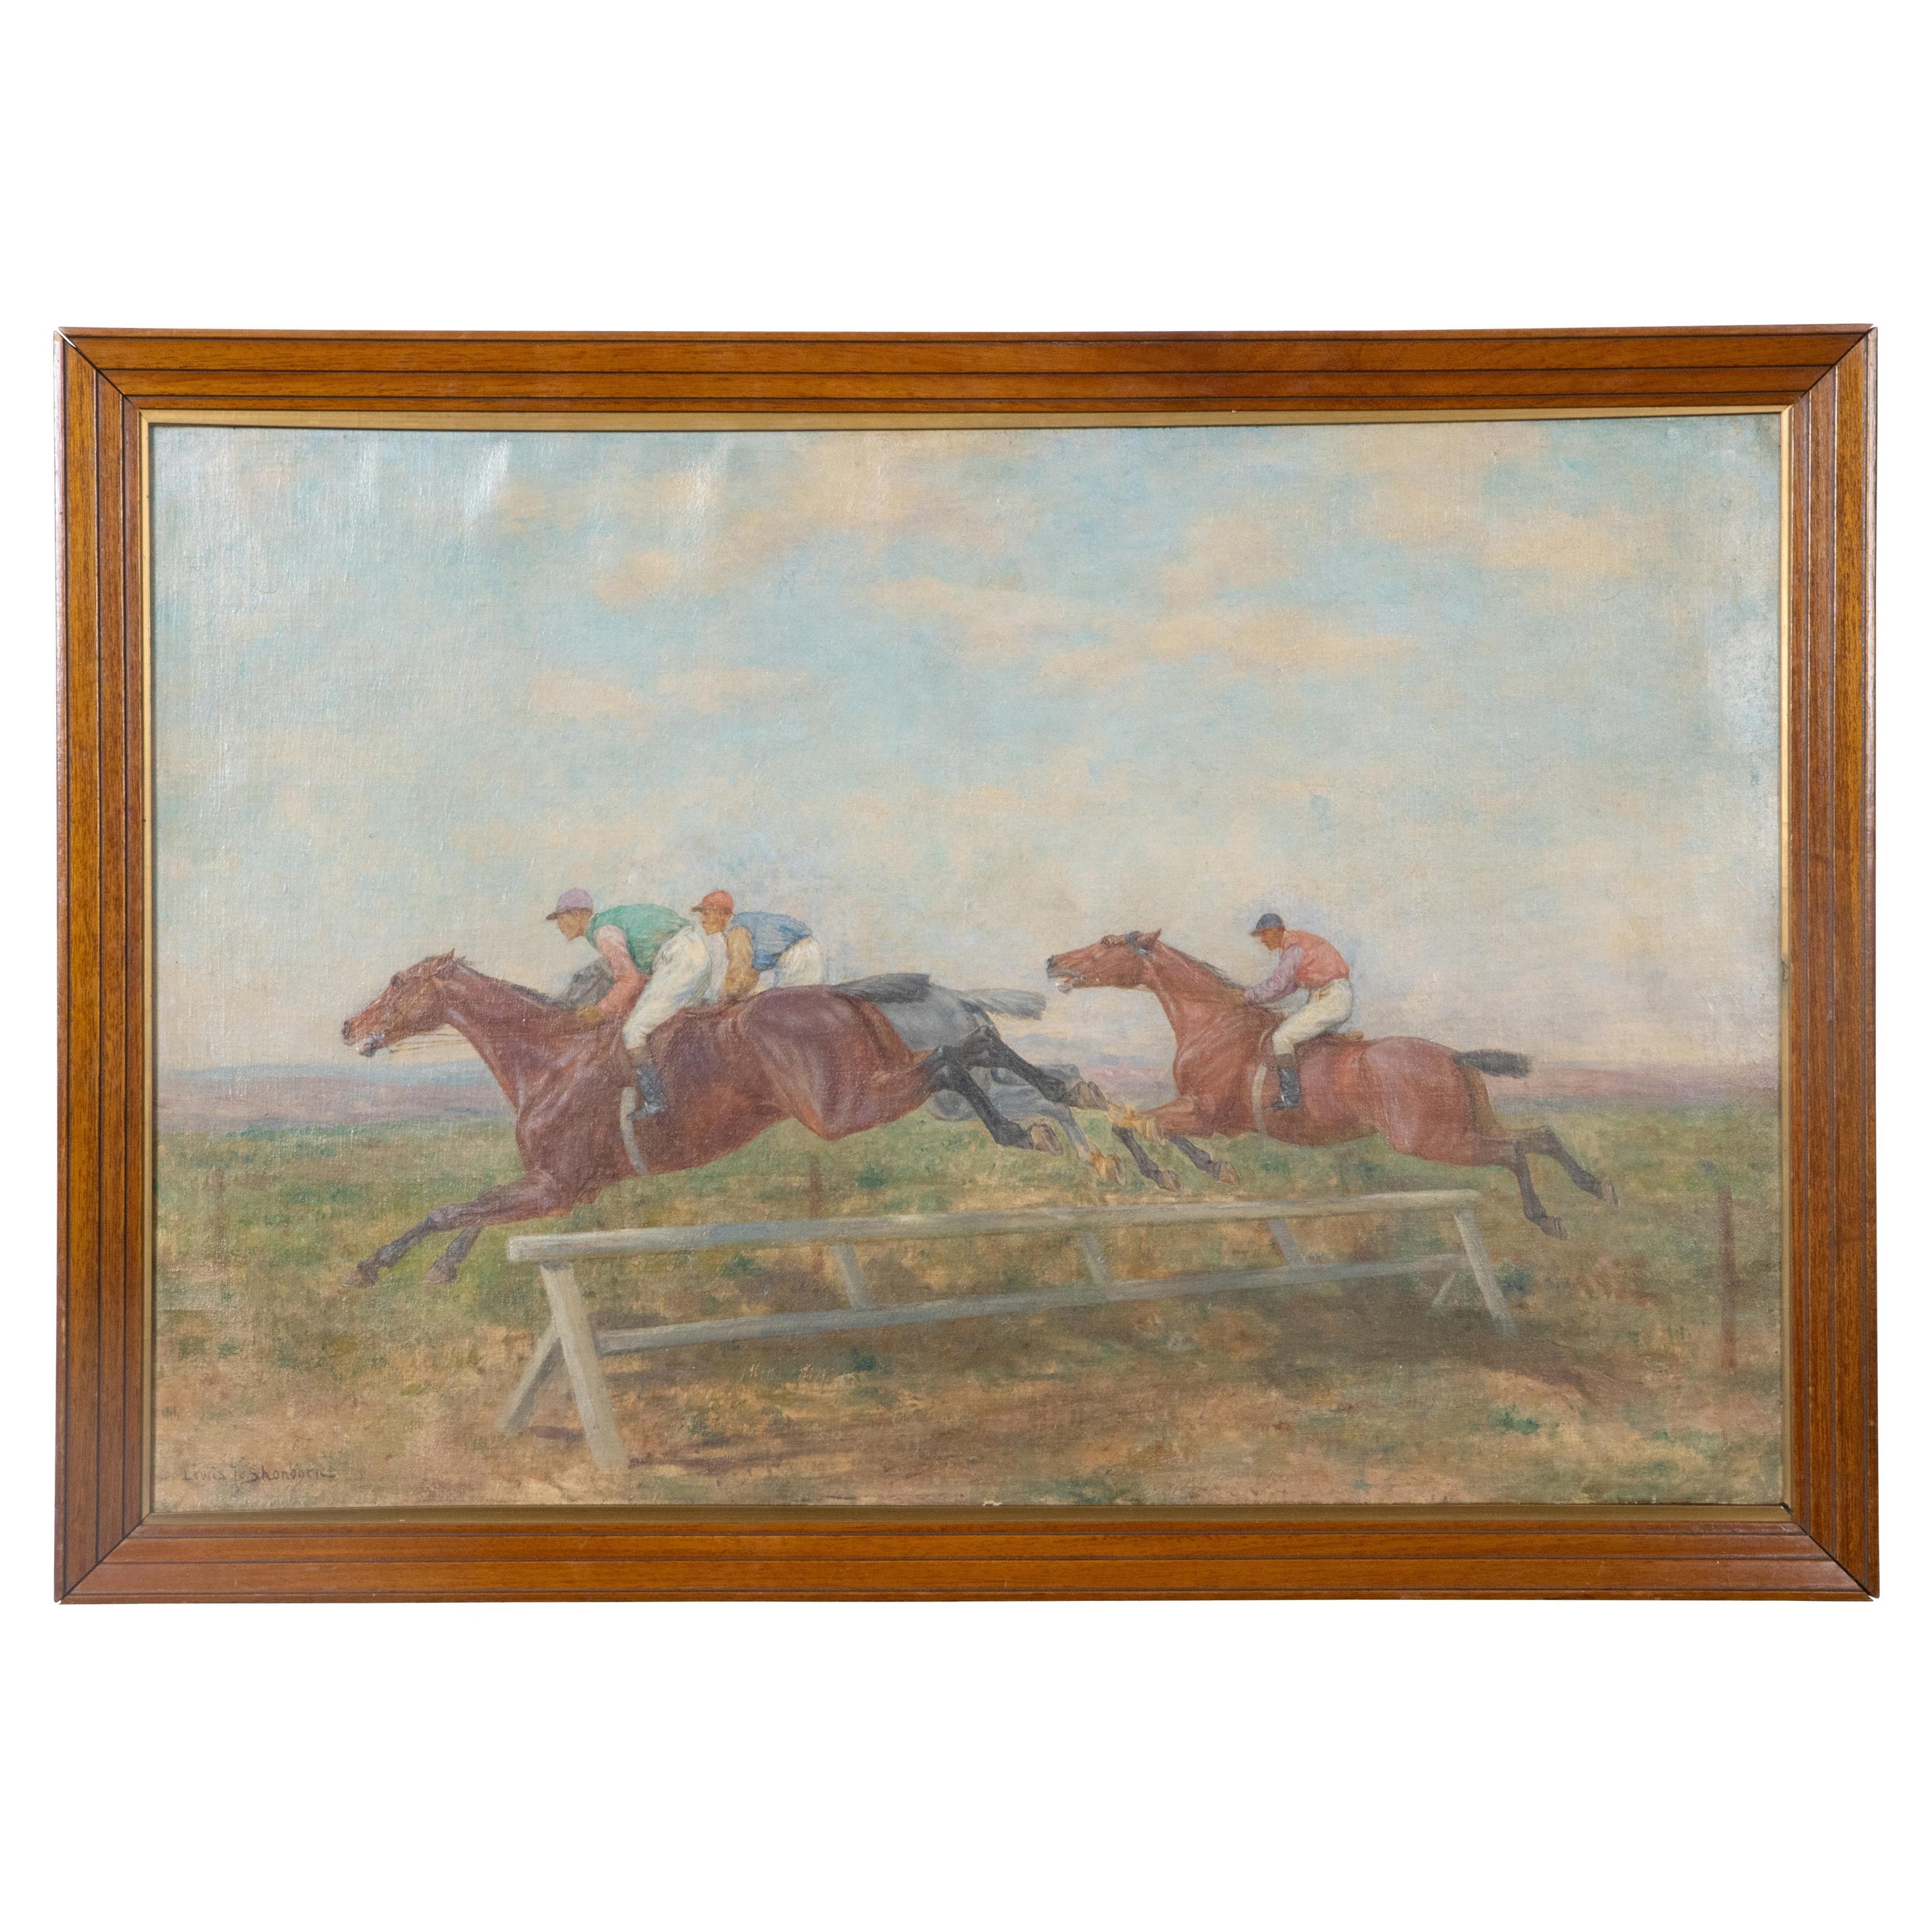 Peinture à l'huile sur toile encadrée représentant une course de chevaux par Lewis John Shonborn